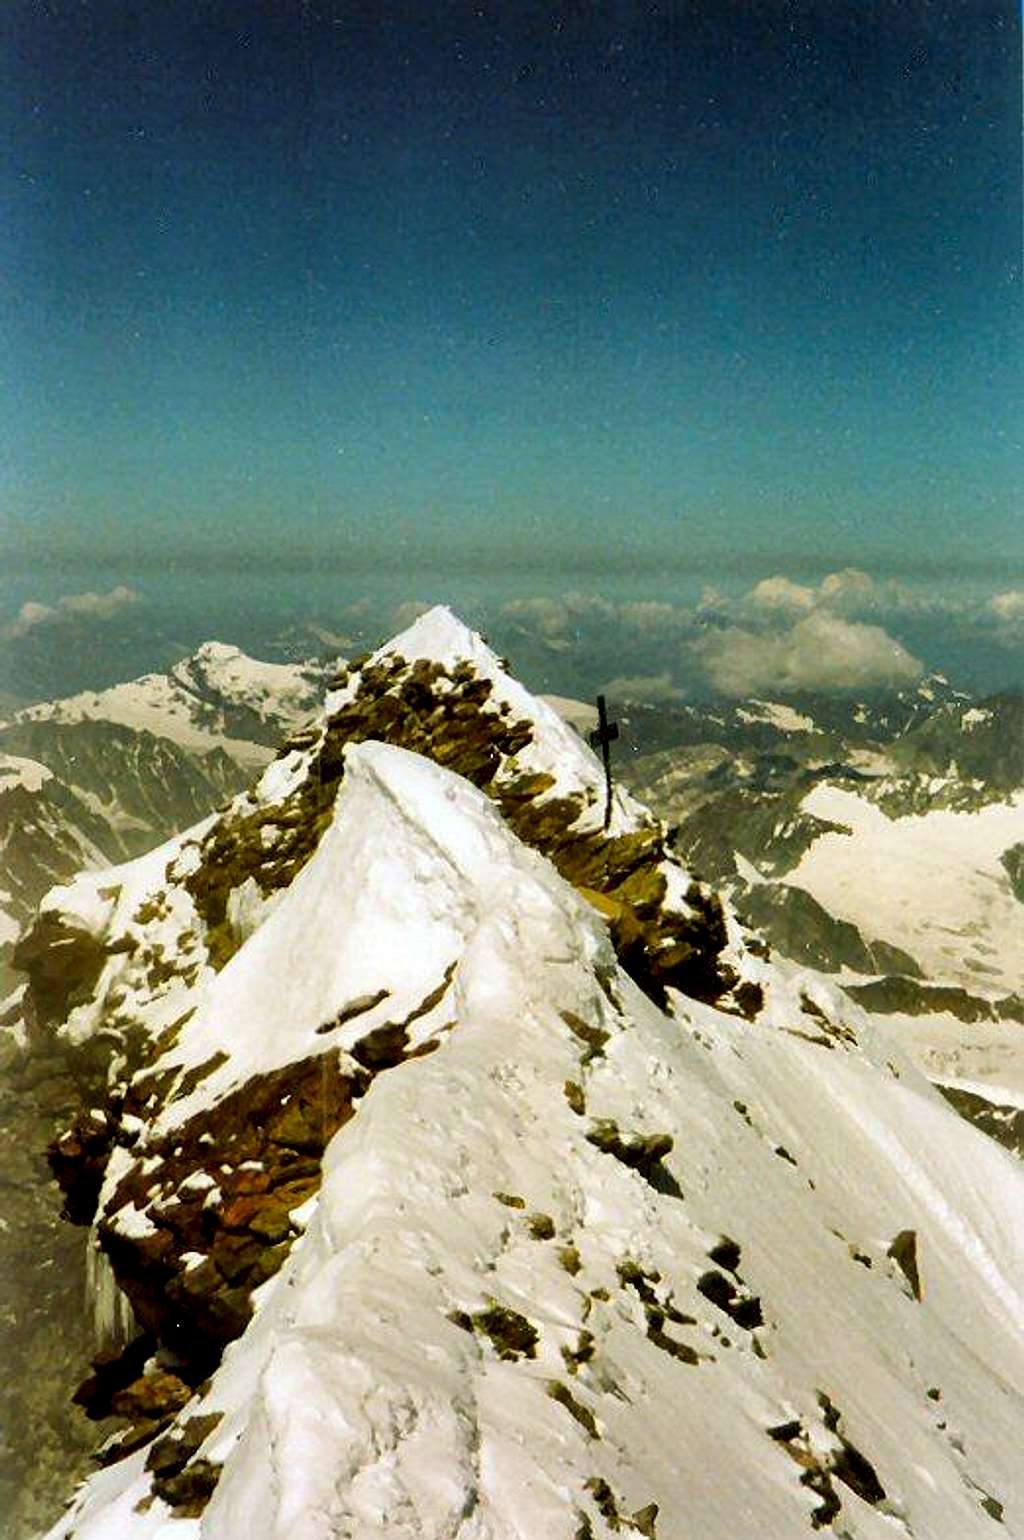 Matterhorn summit cross just visible